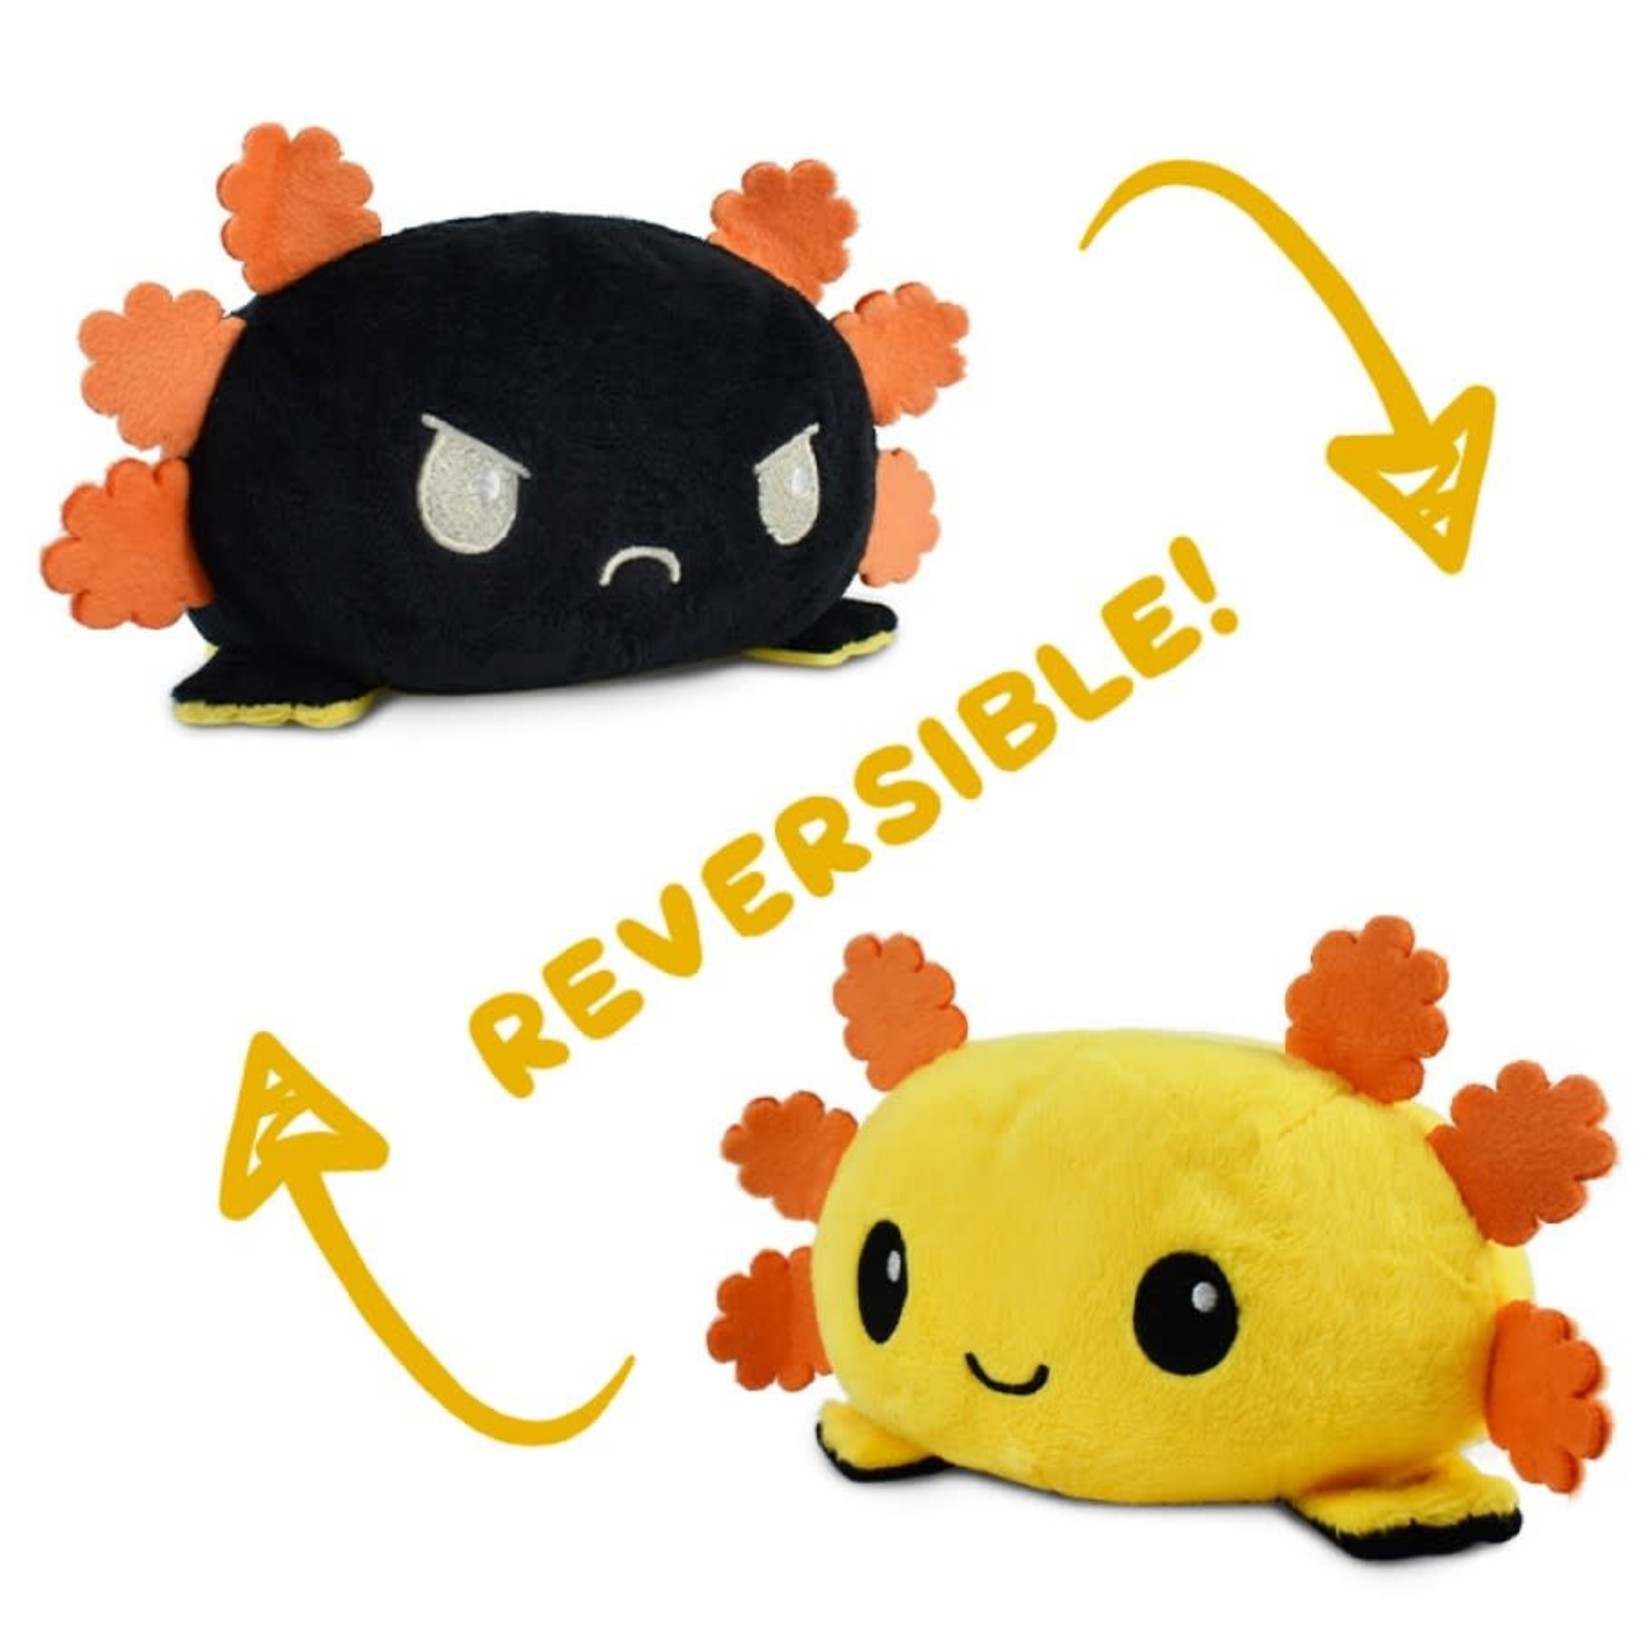 Reversible Axolotl Mini Plush: Yellow & Black